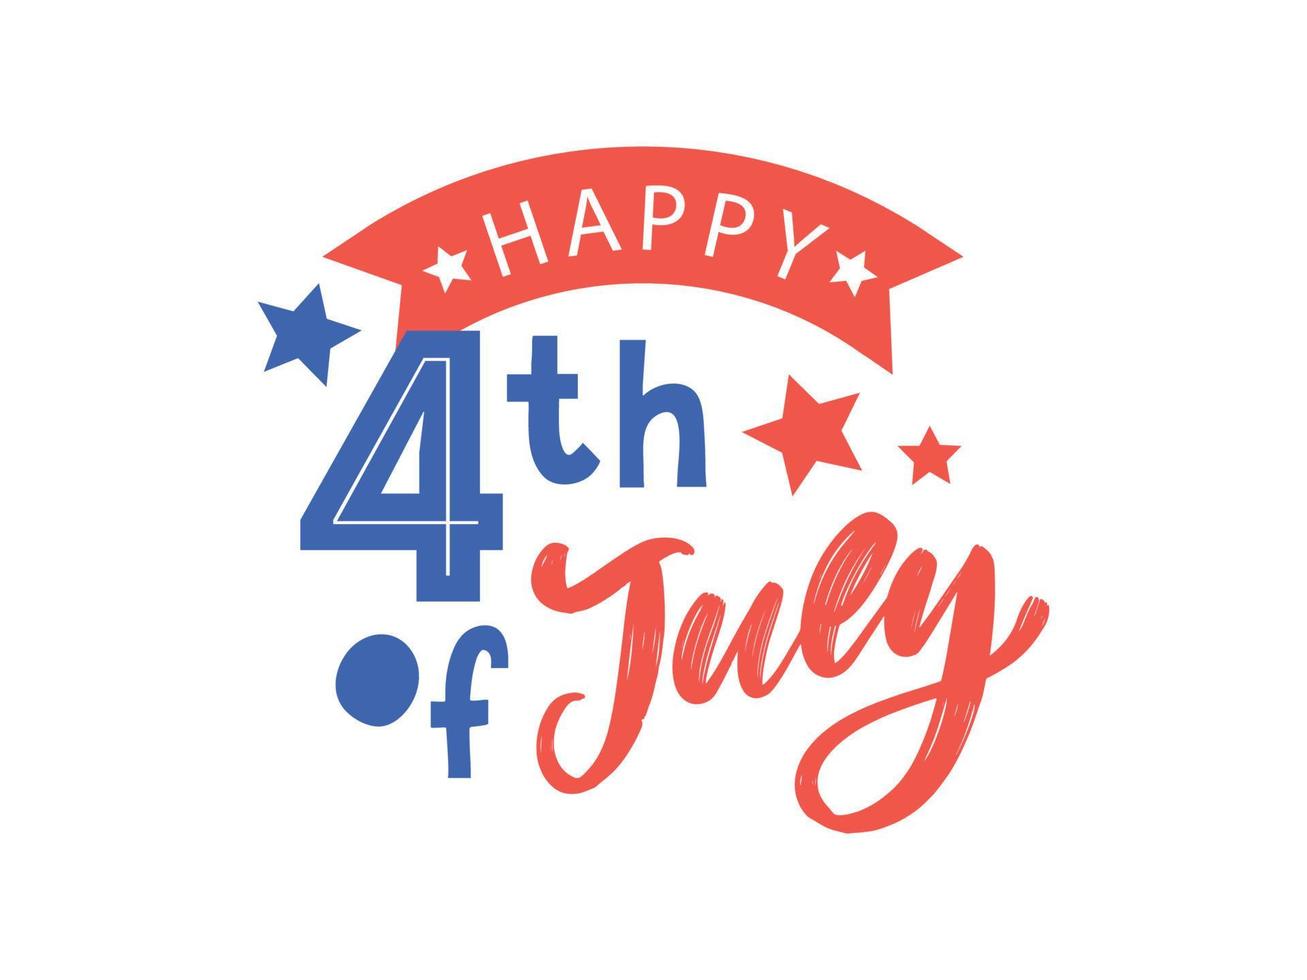 4 juli stijlvol Amerikaans ontwerp voor de onafhankelijkheidsdag 4 juli vector